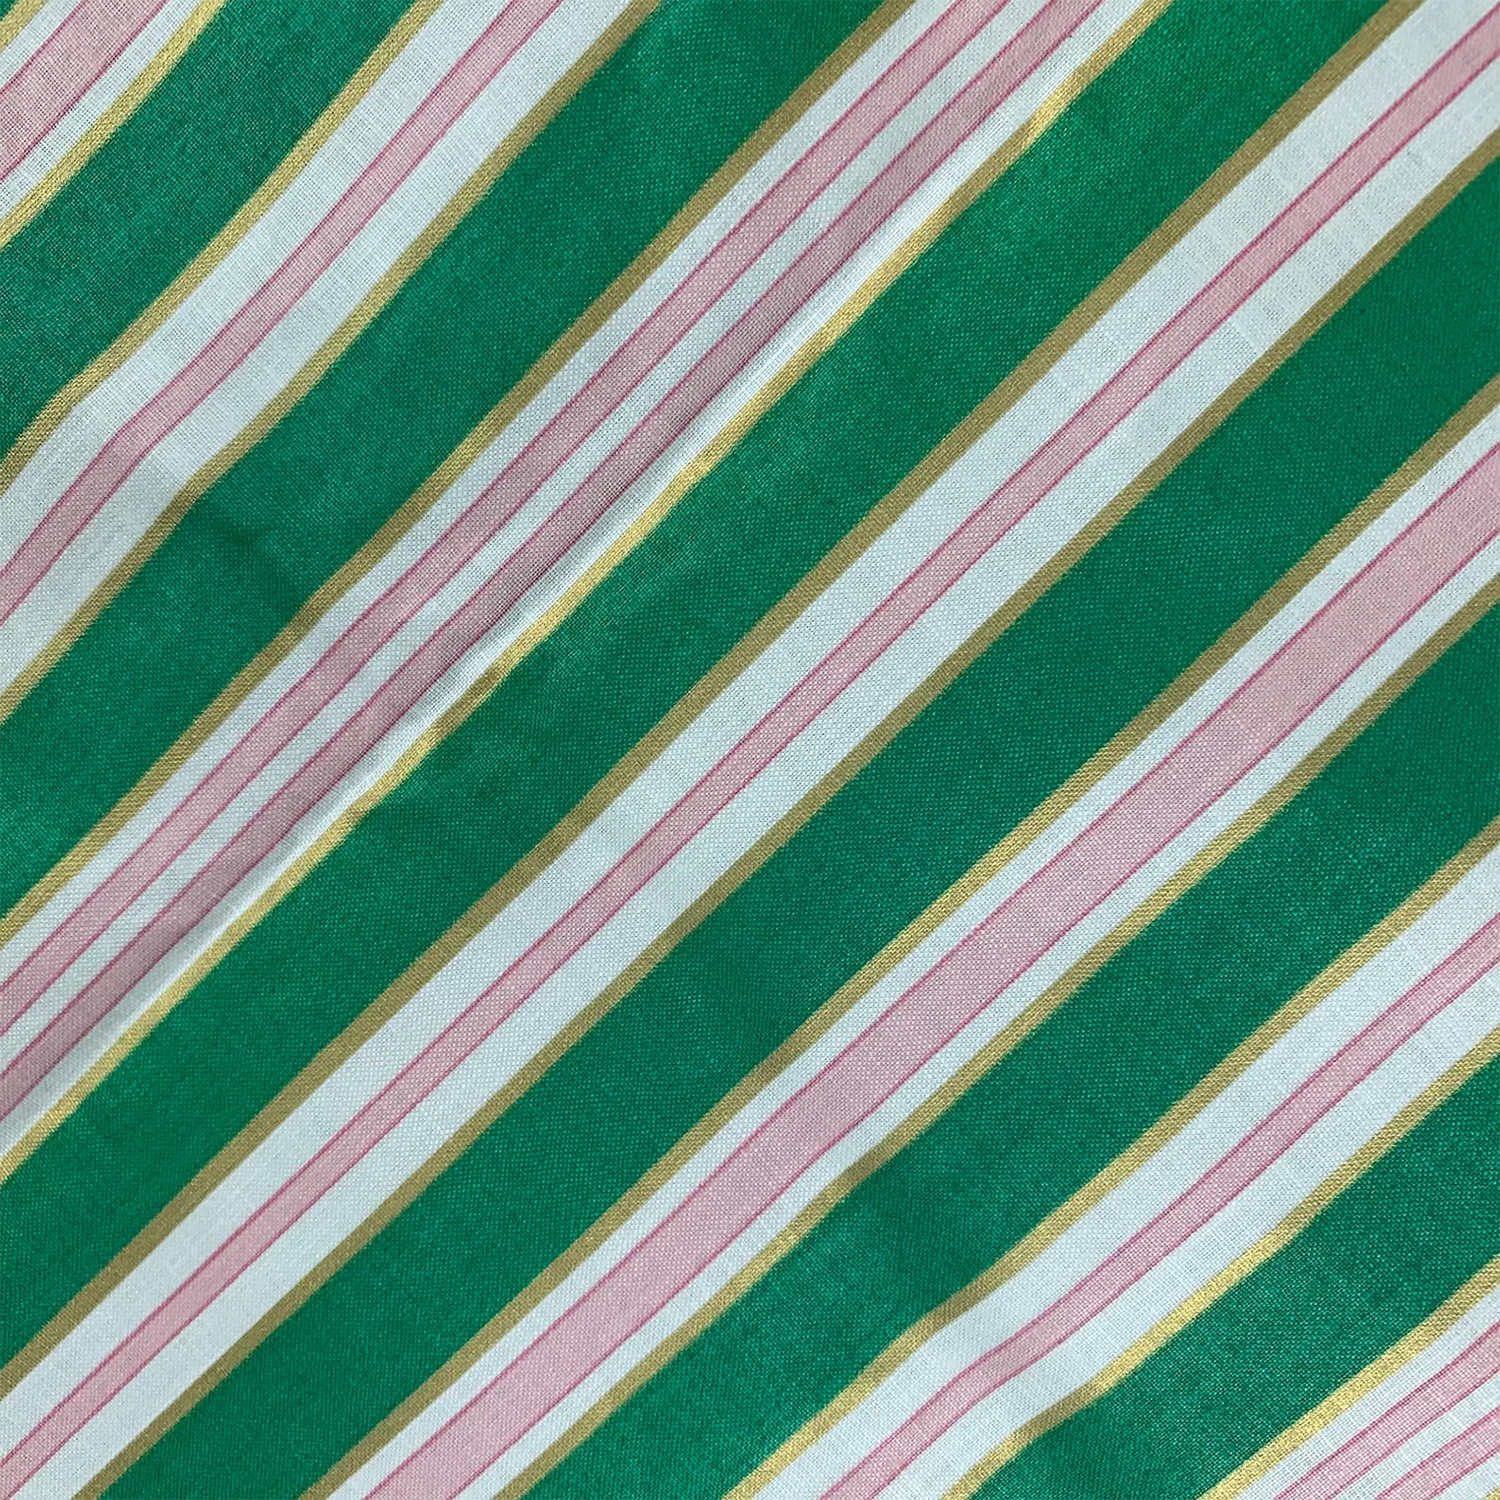 Vintage Schumacher Chintz Fabric Regal Stripe Green Pink Gold Stripes